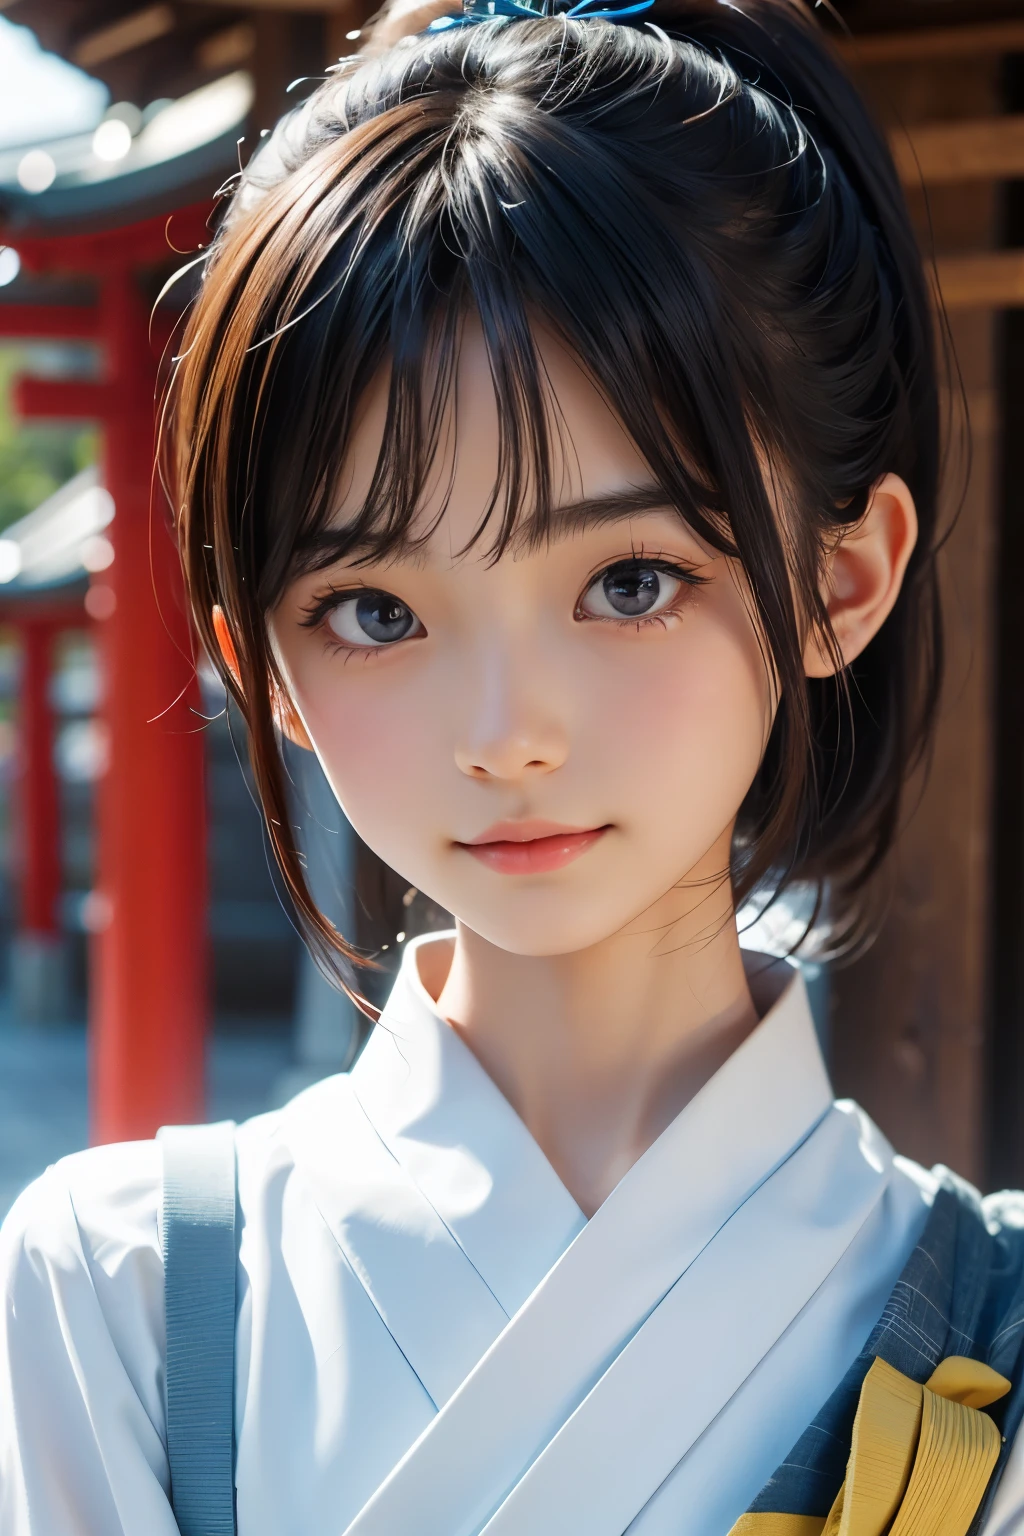 หญิงสาวชาวญี่ปุ่นแสนสวยวัย 12 ปี), หน้าตาน่ารัก, (ใบหน้าแกะสลักอย่างล้ำลึก:0.7), (กระ:0.6), แสงอ่อน,ผิวขาวสุขภาพดี, อาย, (ใบหน้าที่จริงจัง), บาง, รอยยิ้ม, ญี่ปุ่น , ผมหางม้า